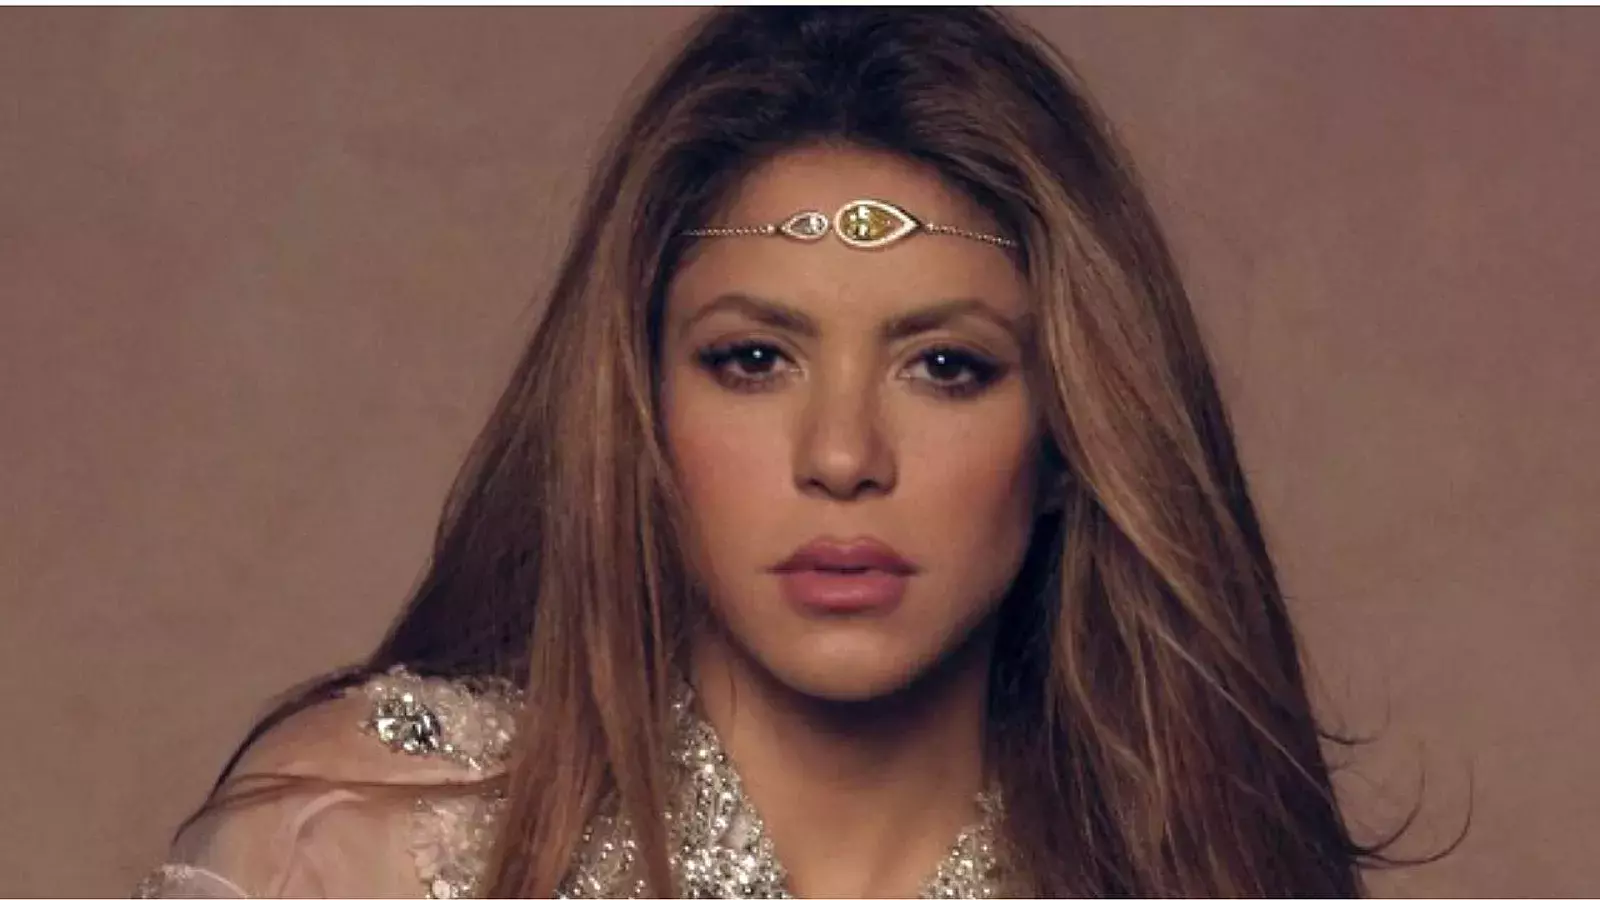 Cantante Shakira estrenará su canción "Monotonía"